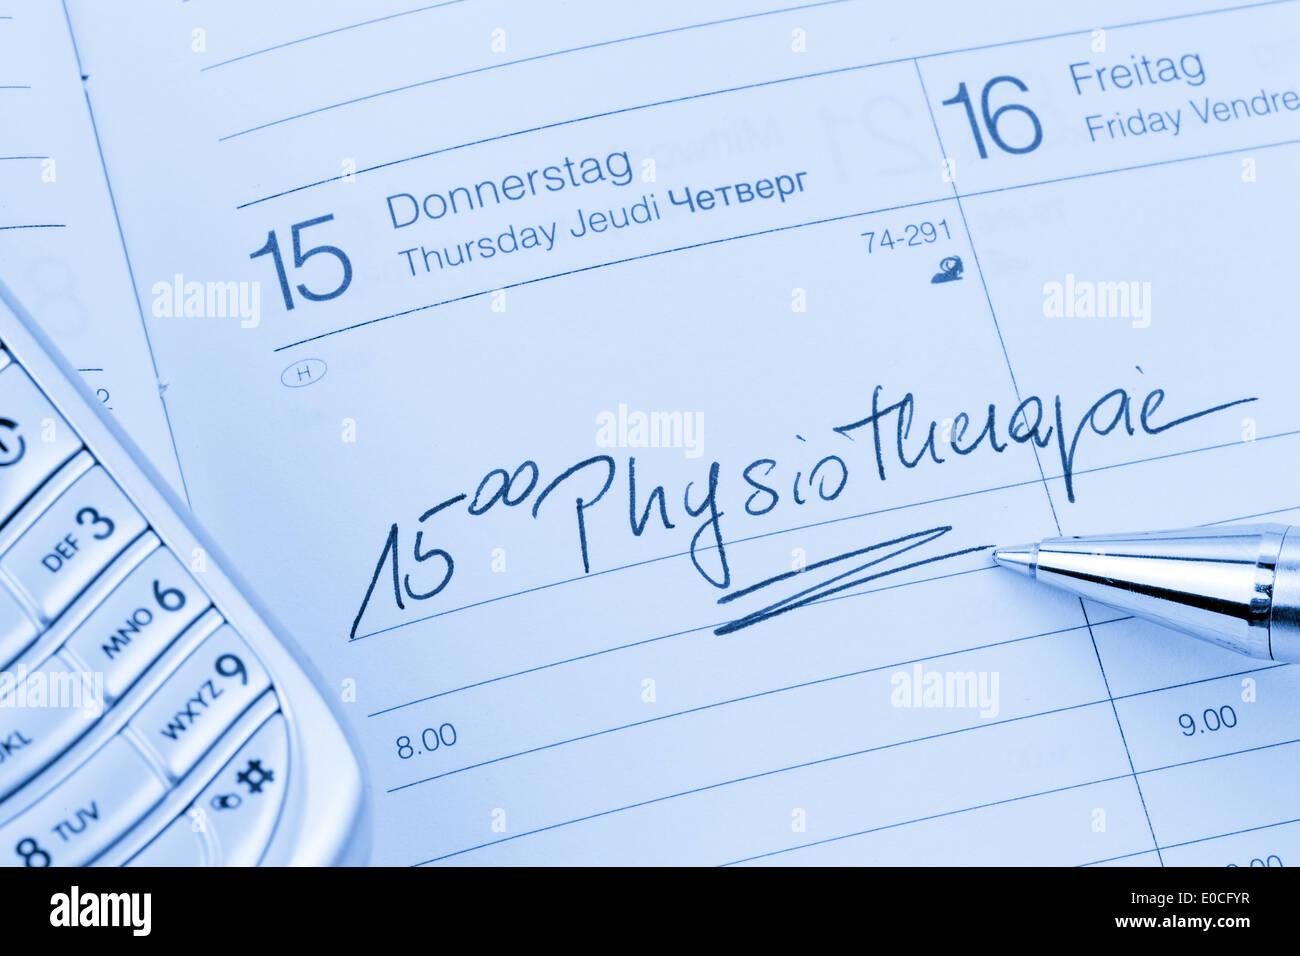 Un appuntamento viene messo giù in un calendario: FISIOTERAPIA, Ein Termin ist in einem Kalender eingetragen: Physiotherapie Foto Stock